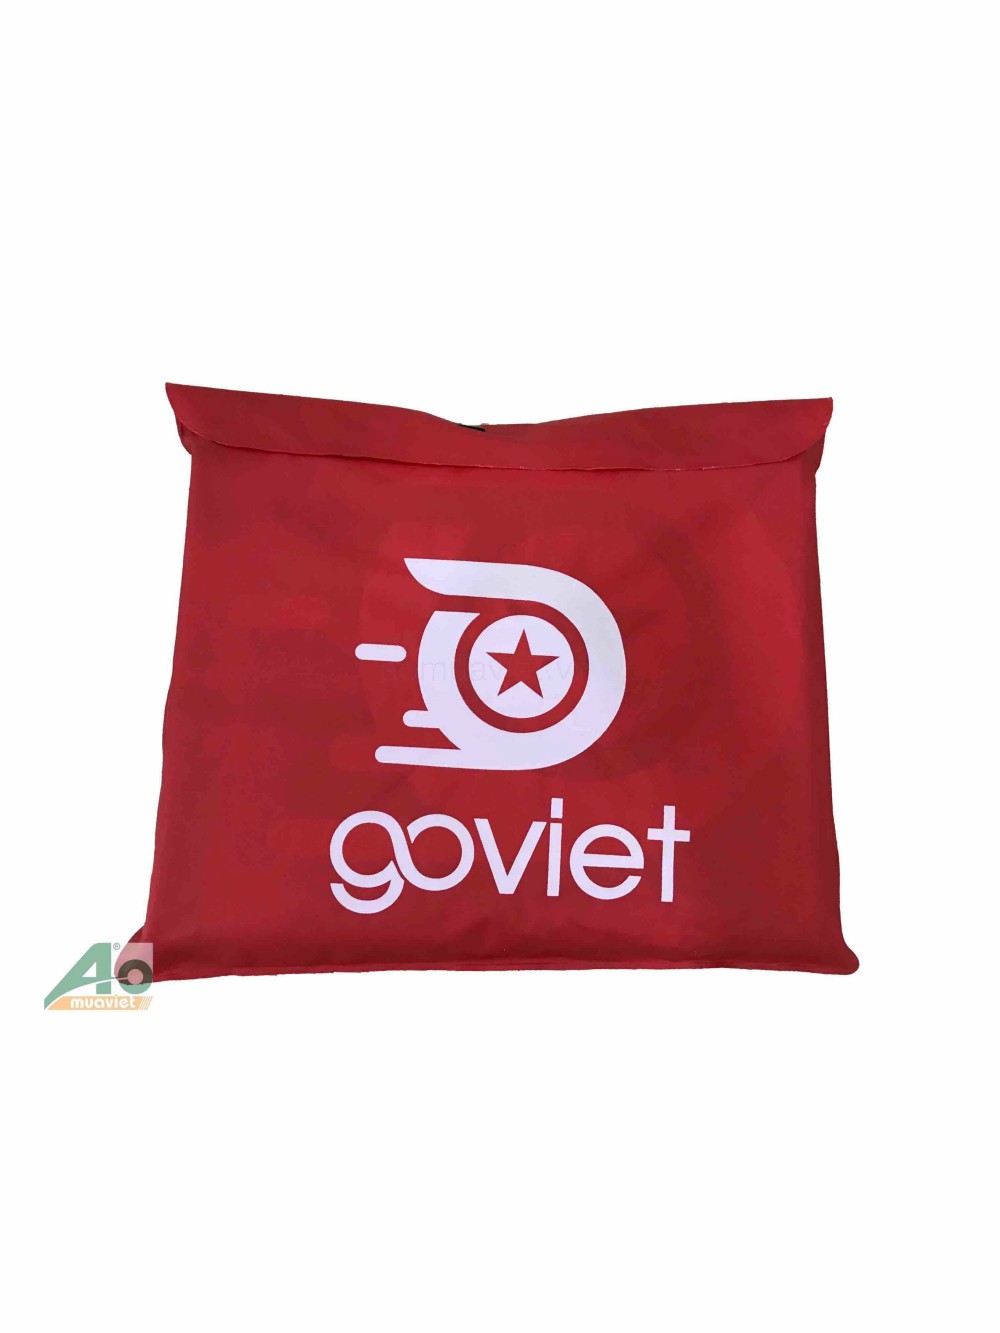 Hướng dẫn cách đăng ký làm tài xế Online GoViet chi tiết nhất hiện nay